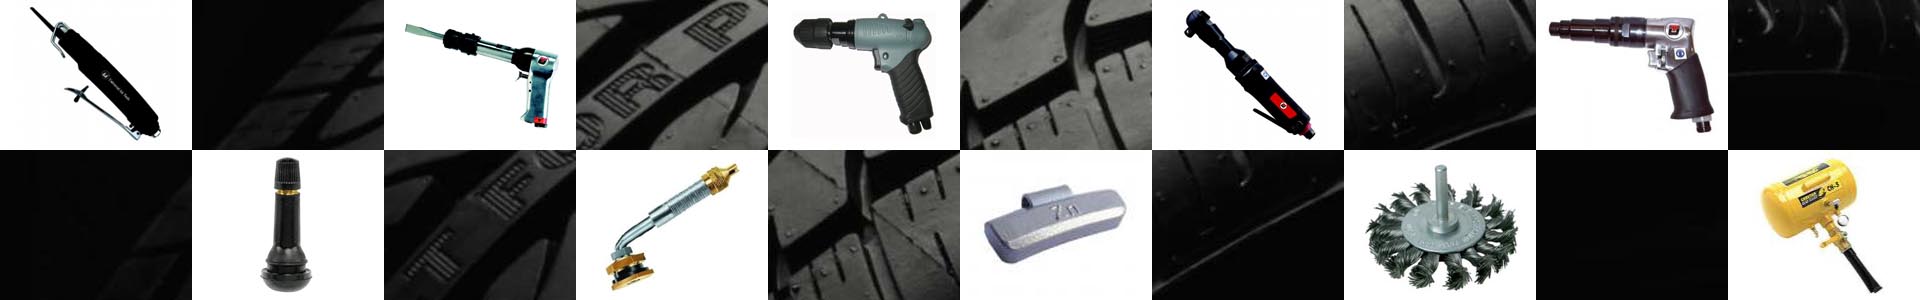 Wheel Brace - Car Wheel Brace, Wheel Brace Wrench